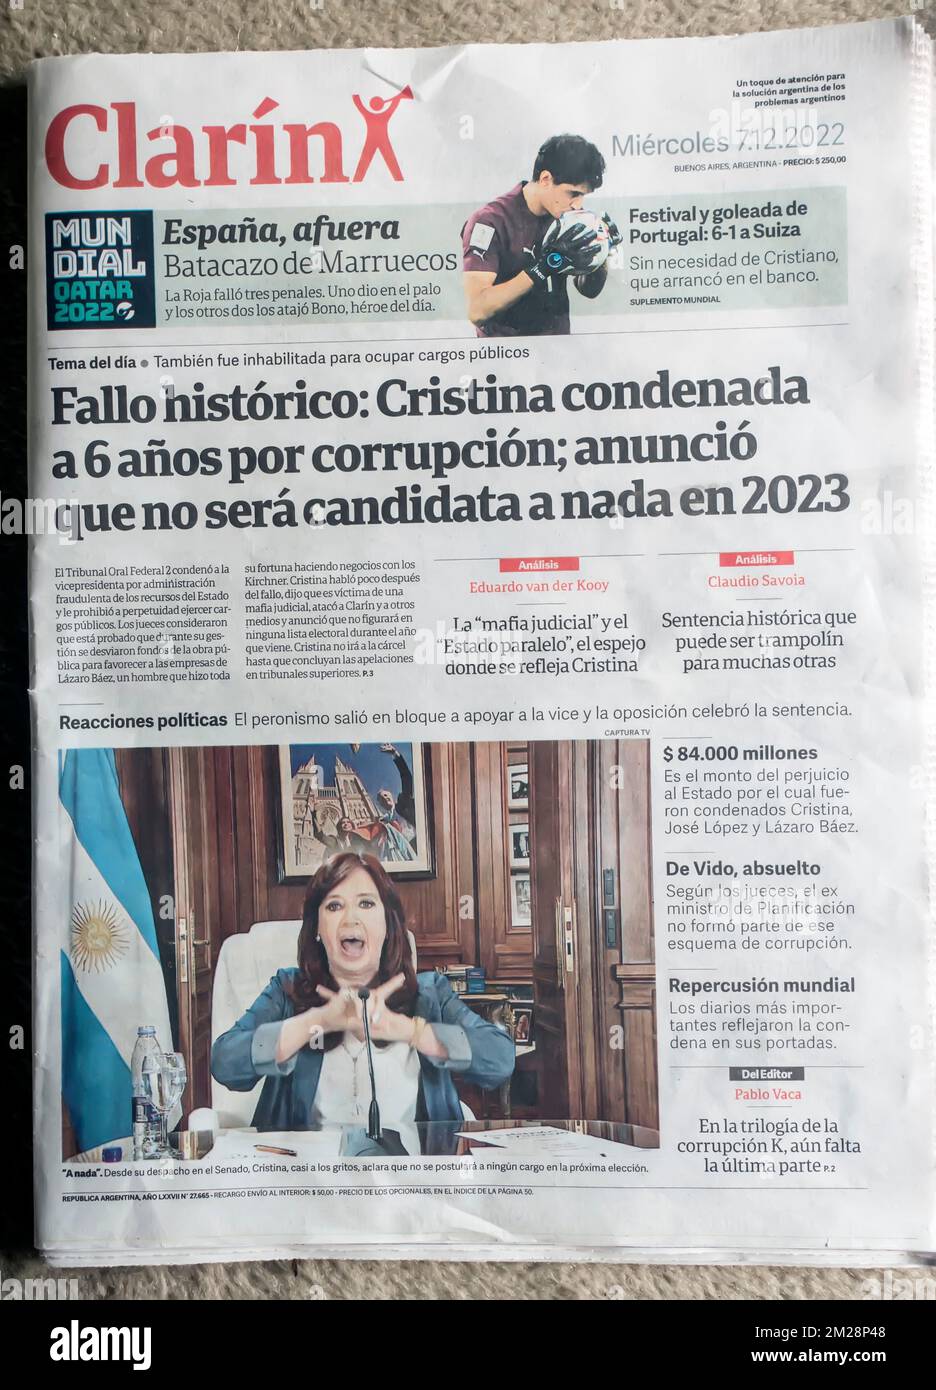 Giornale argentino Clarin prima pagina notizia della condanna di sei anni di carcere per corruzione della Vicepresidente Cristina Fernandez de Kirchner Foto Stock